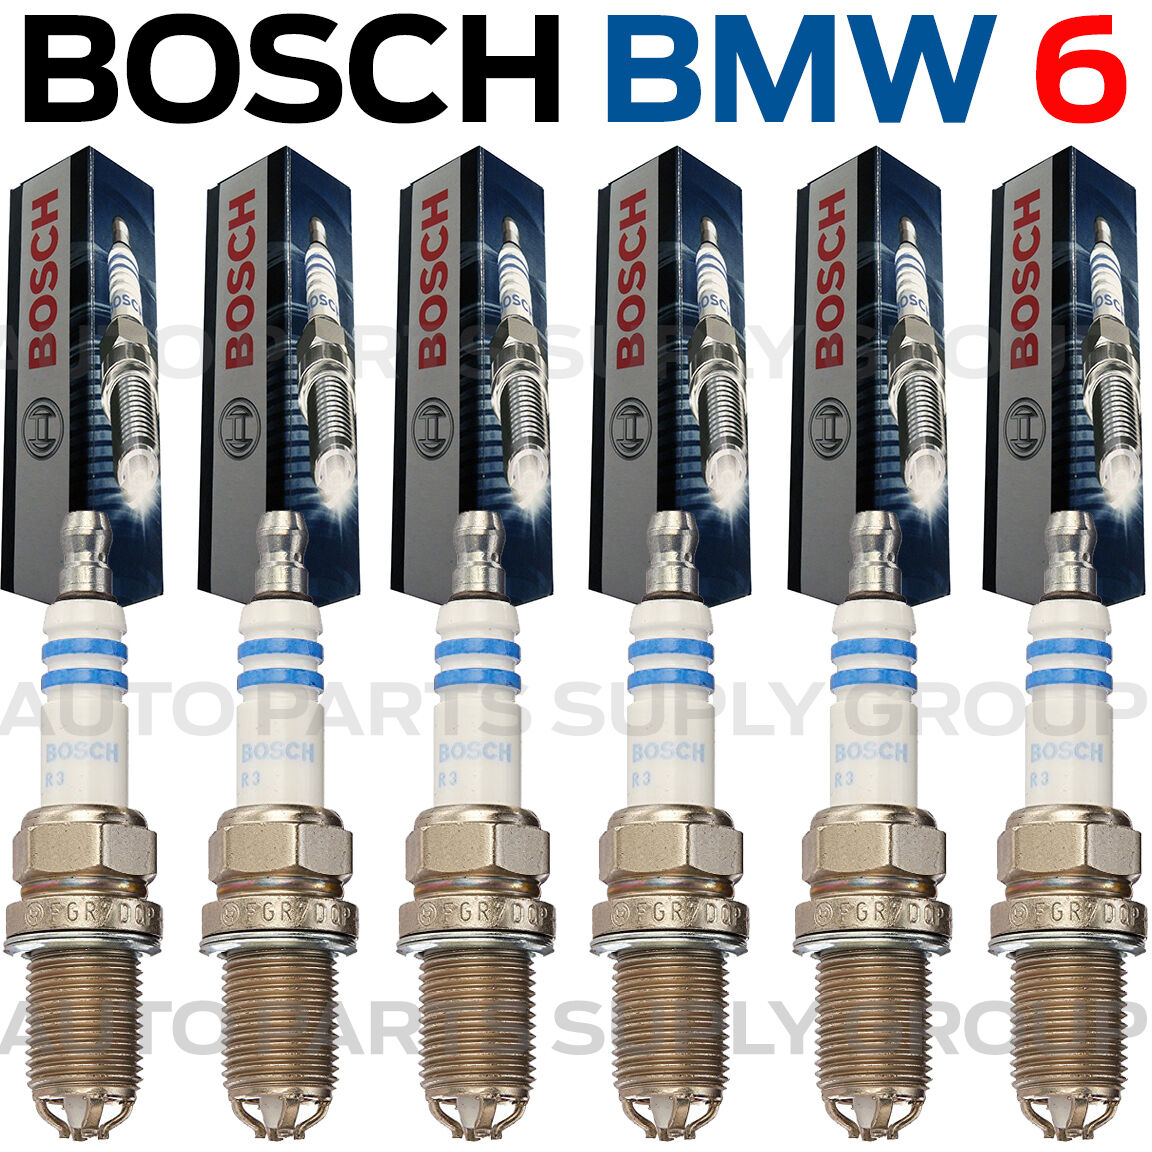 6PC BMW Spark Plugs Bosch OEM Platinum+4 Factory High Power Set E39/E46-M54 NEW